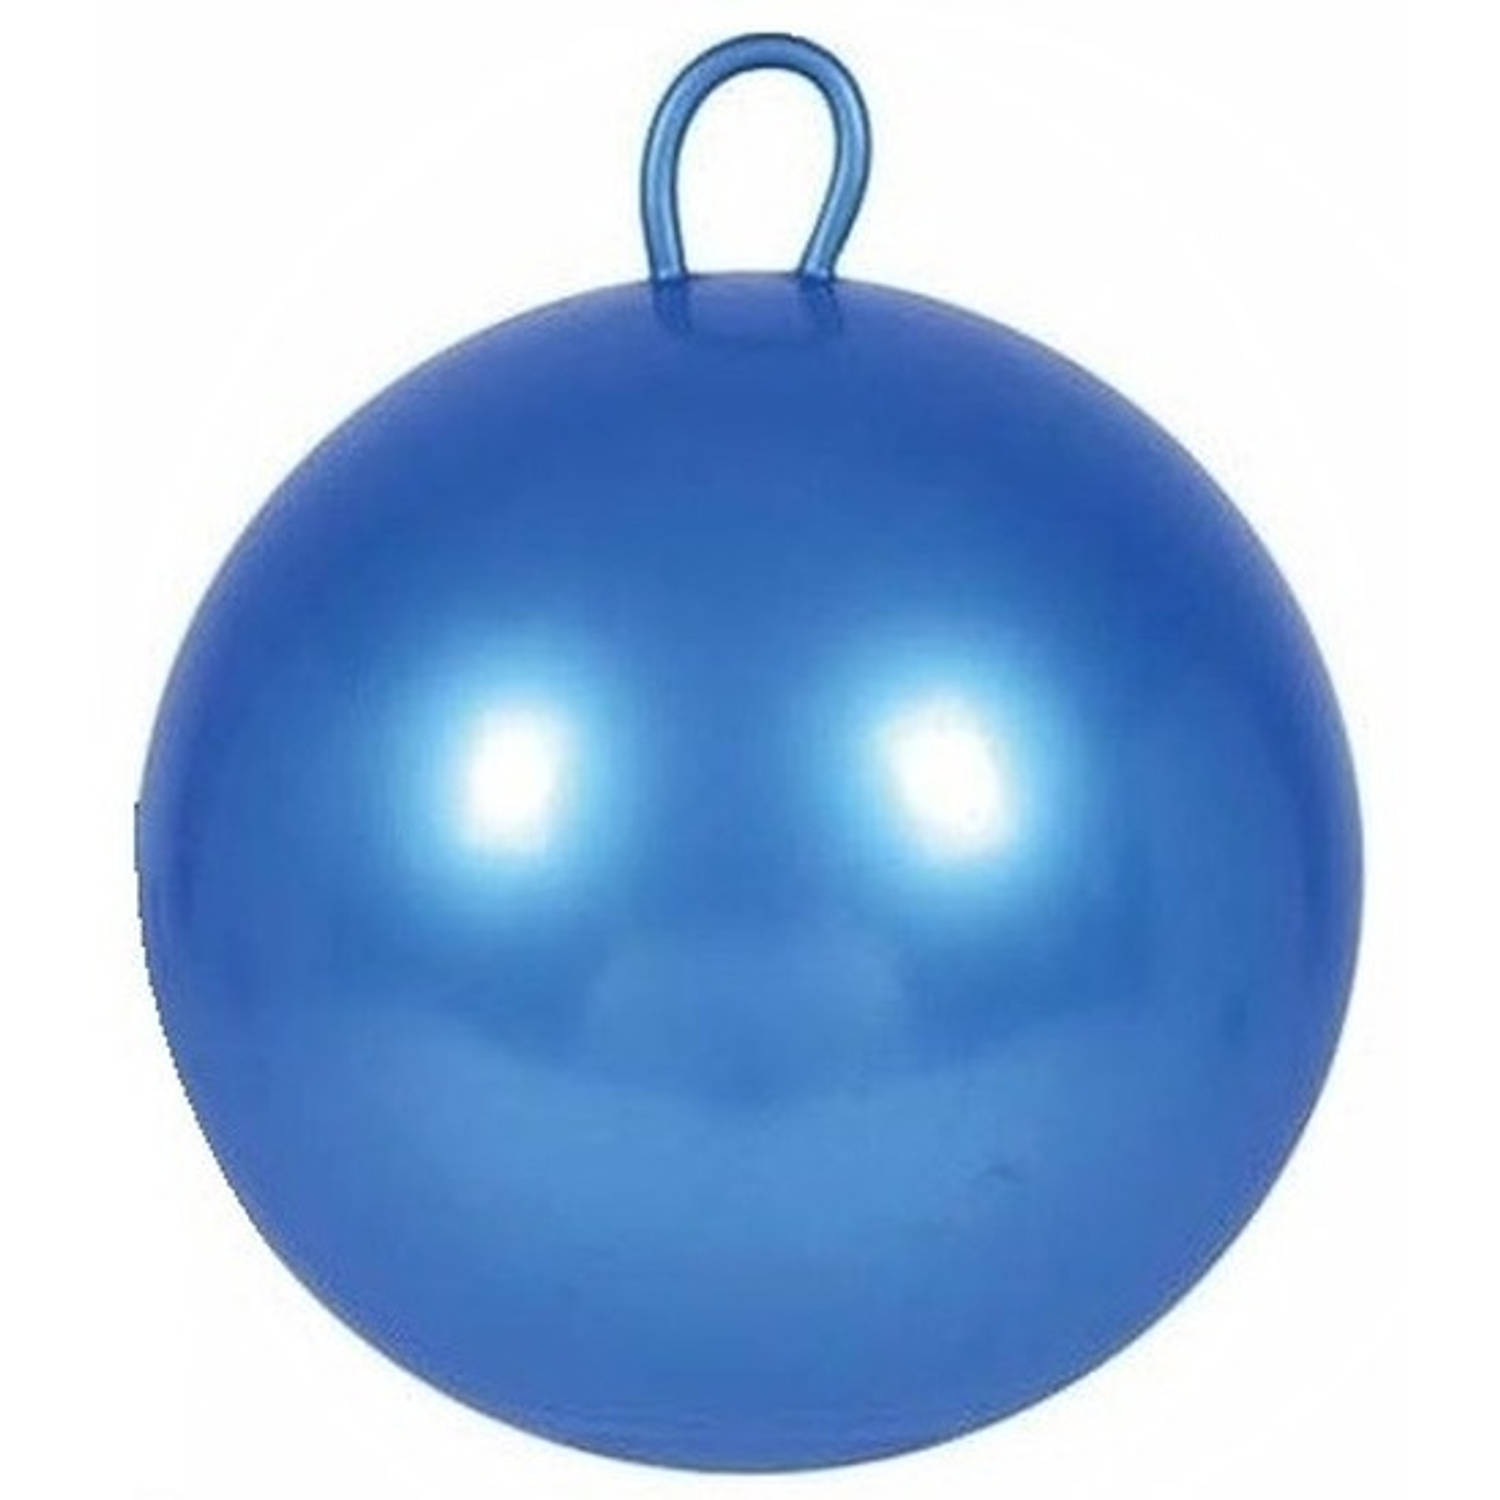 Skippybal 70 Cm Voor Kinderen - Skippyballen Buitenspeelgoed Voor Jongens/meisjes - Blauw